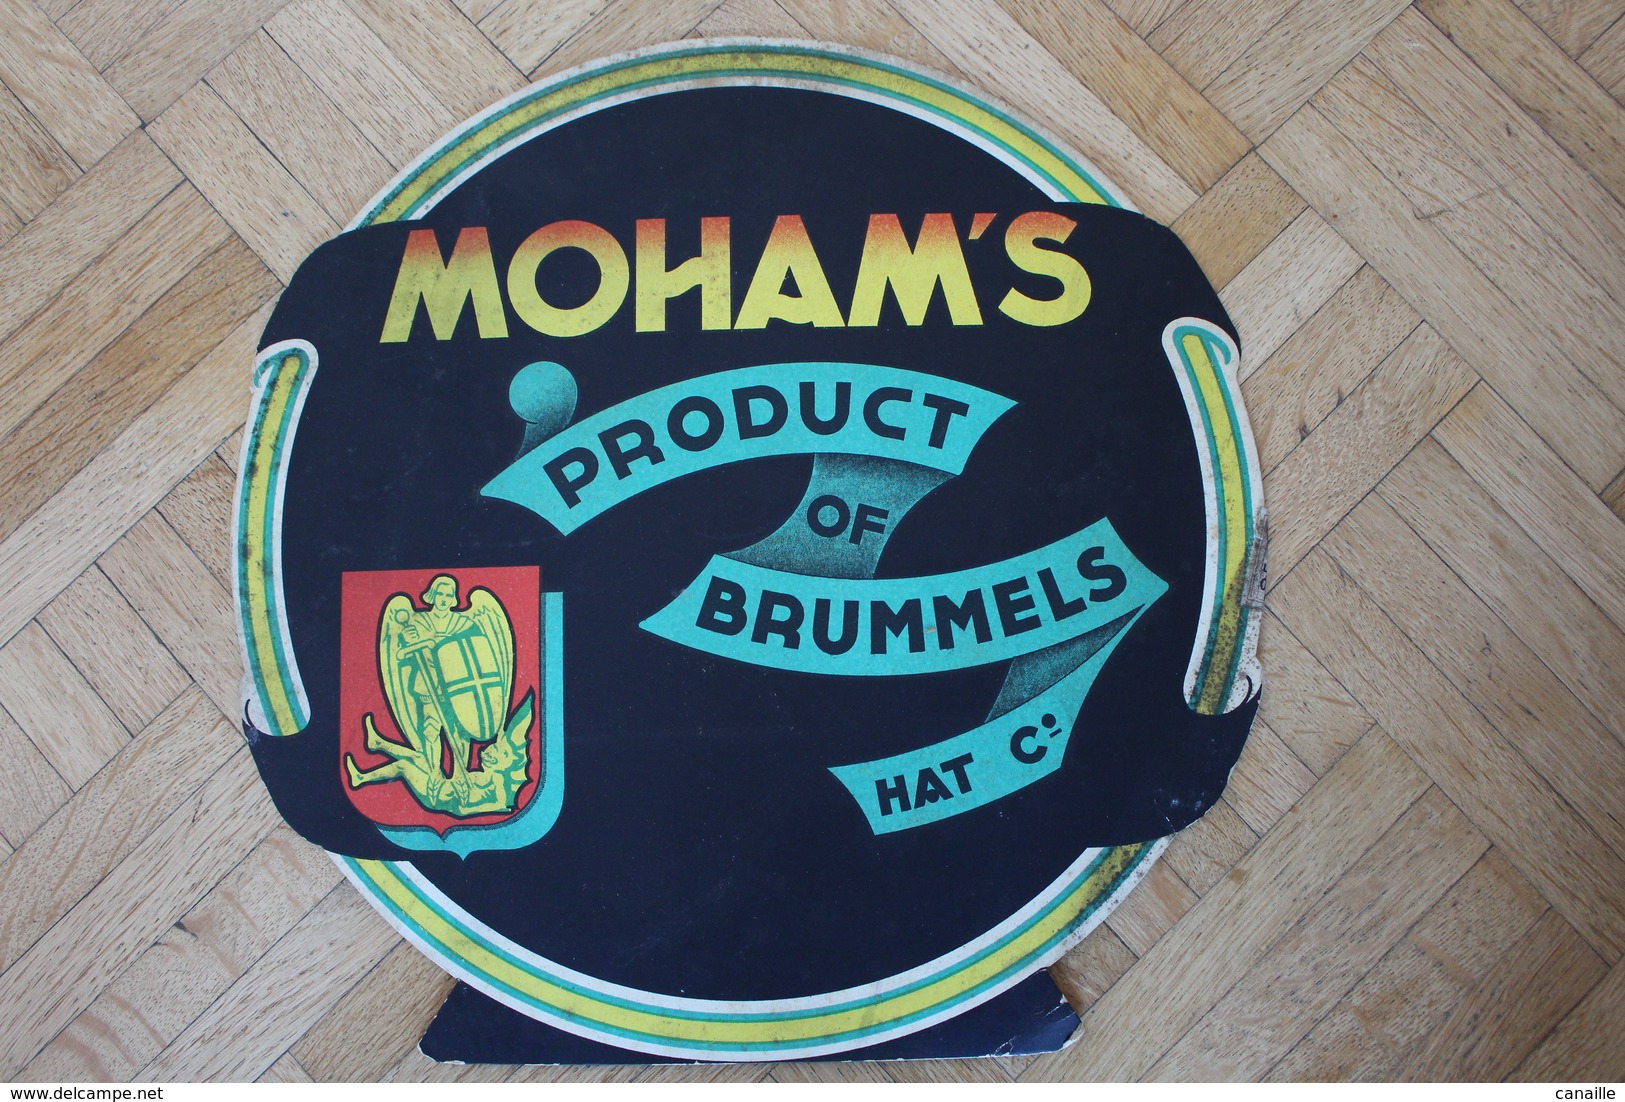 Rare Publicité De Carton - Tabac GOSSET-St MICHEL - Moham's - Product Of Brummel - 1959 - Diametre 30 Cm - Objets Publicitaires